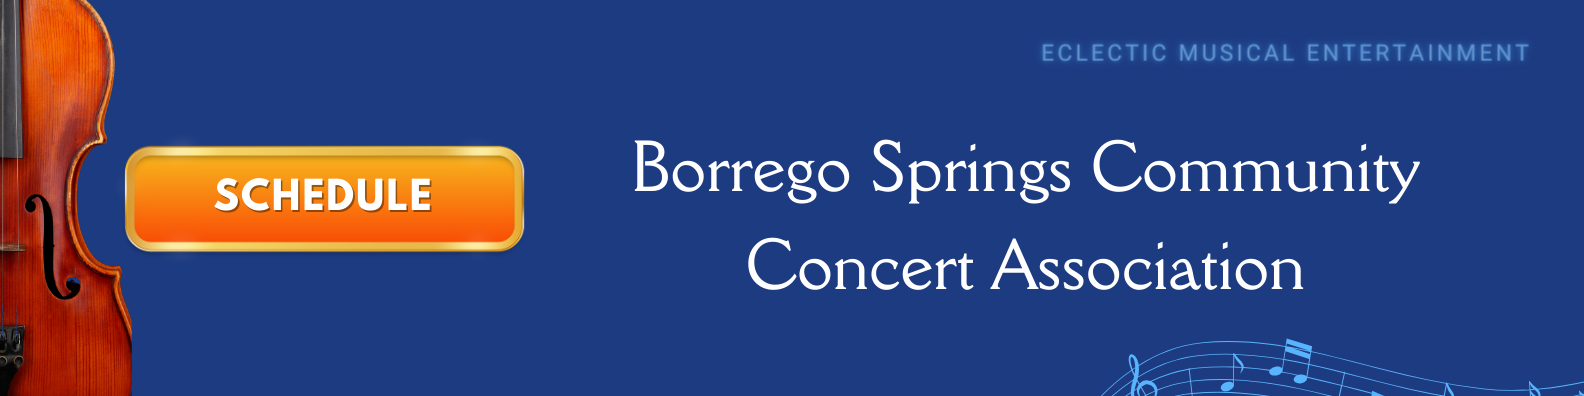 The Borrego Springs Community Concert Association